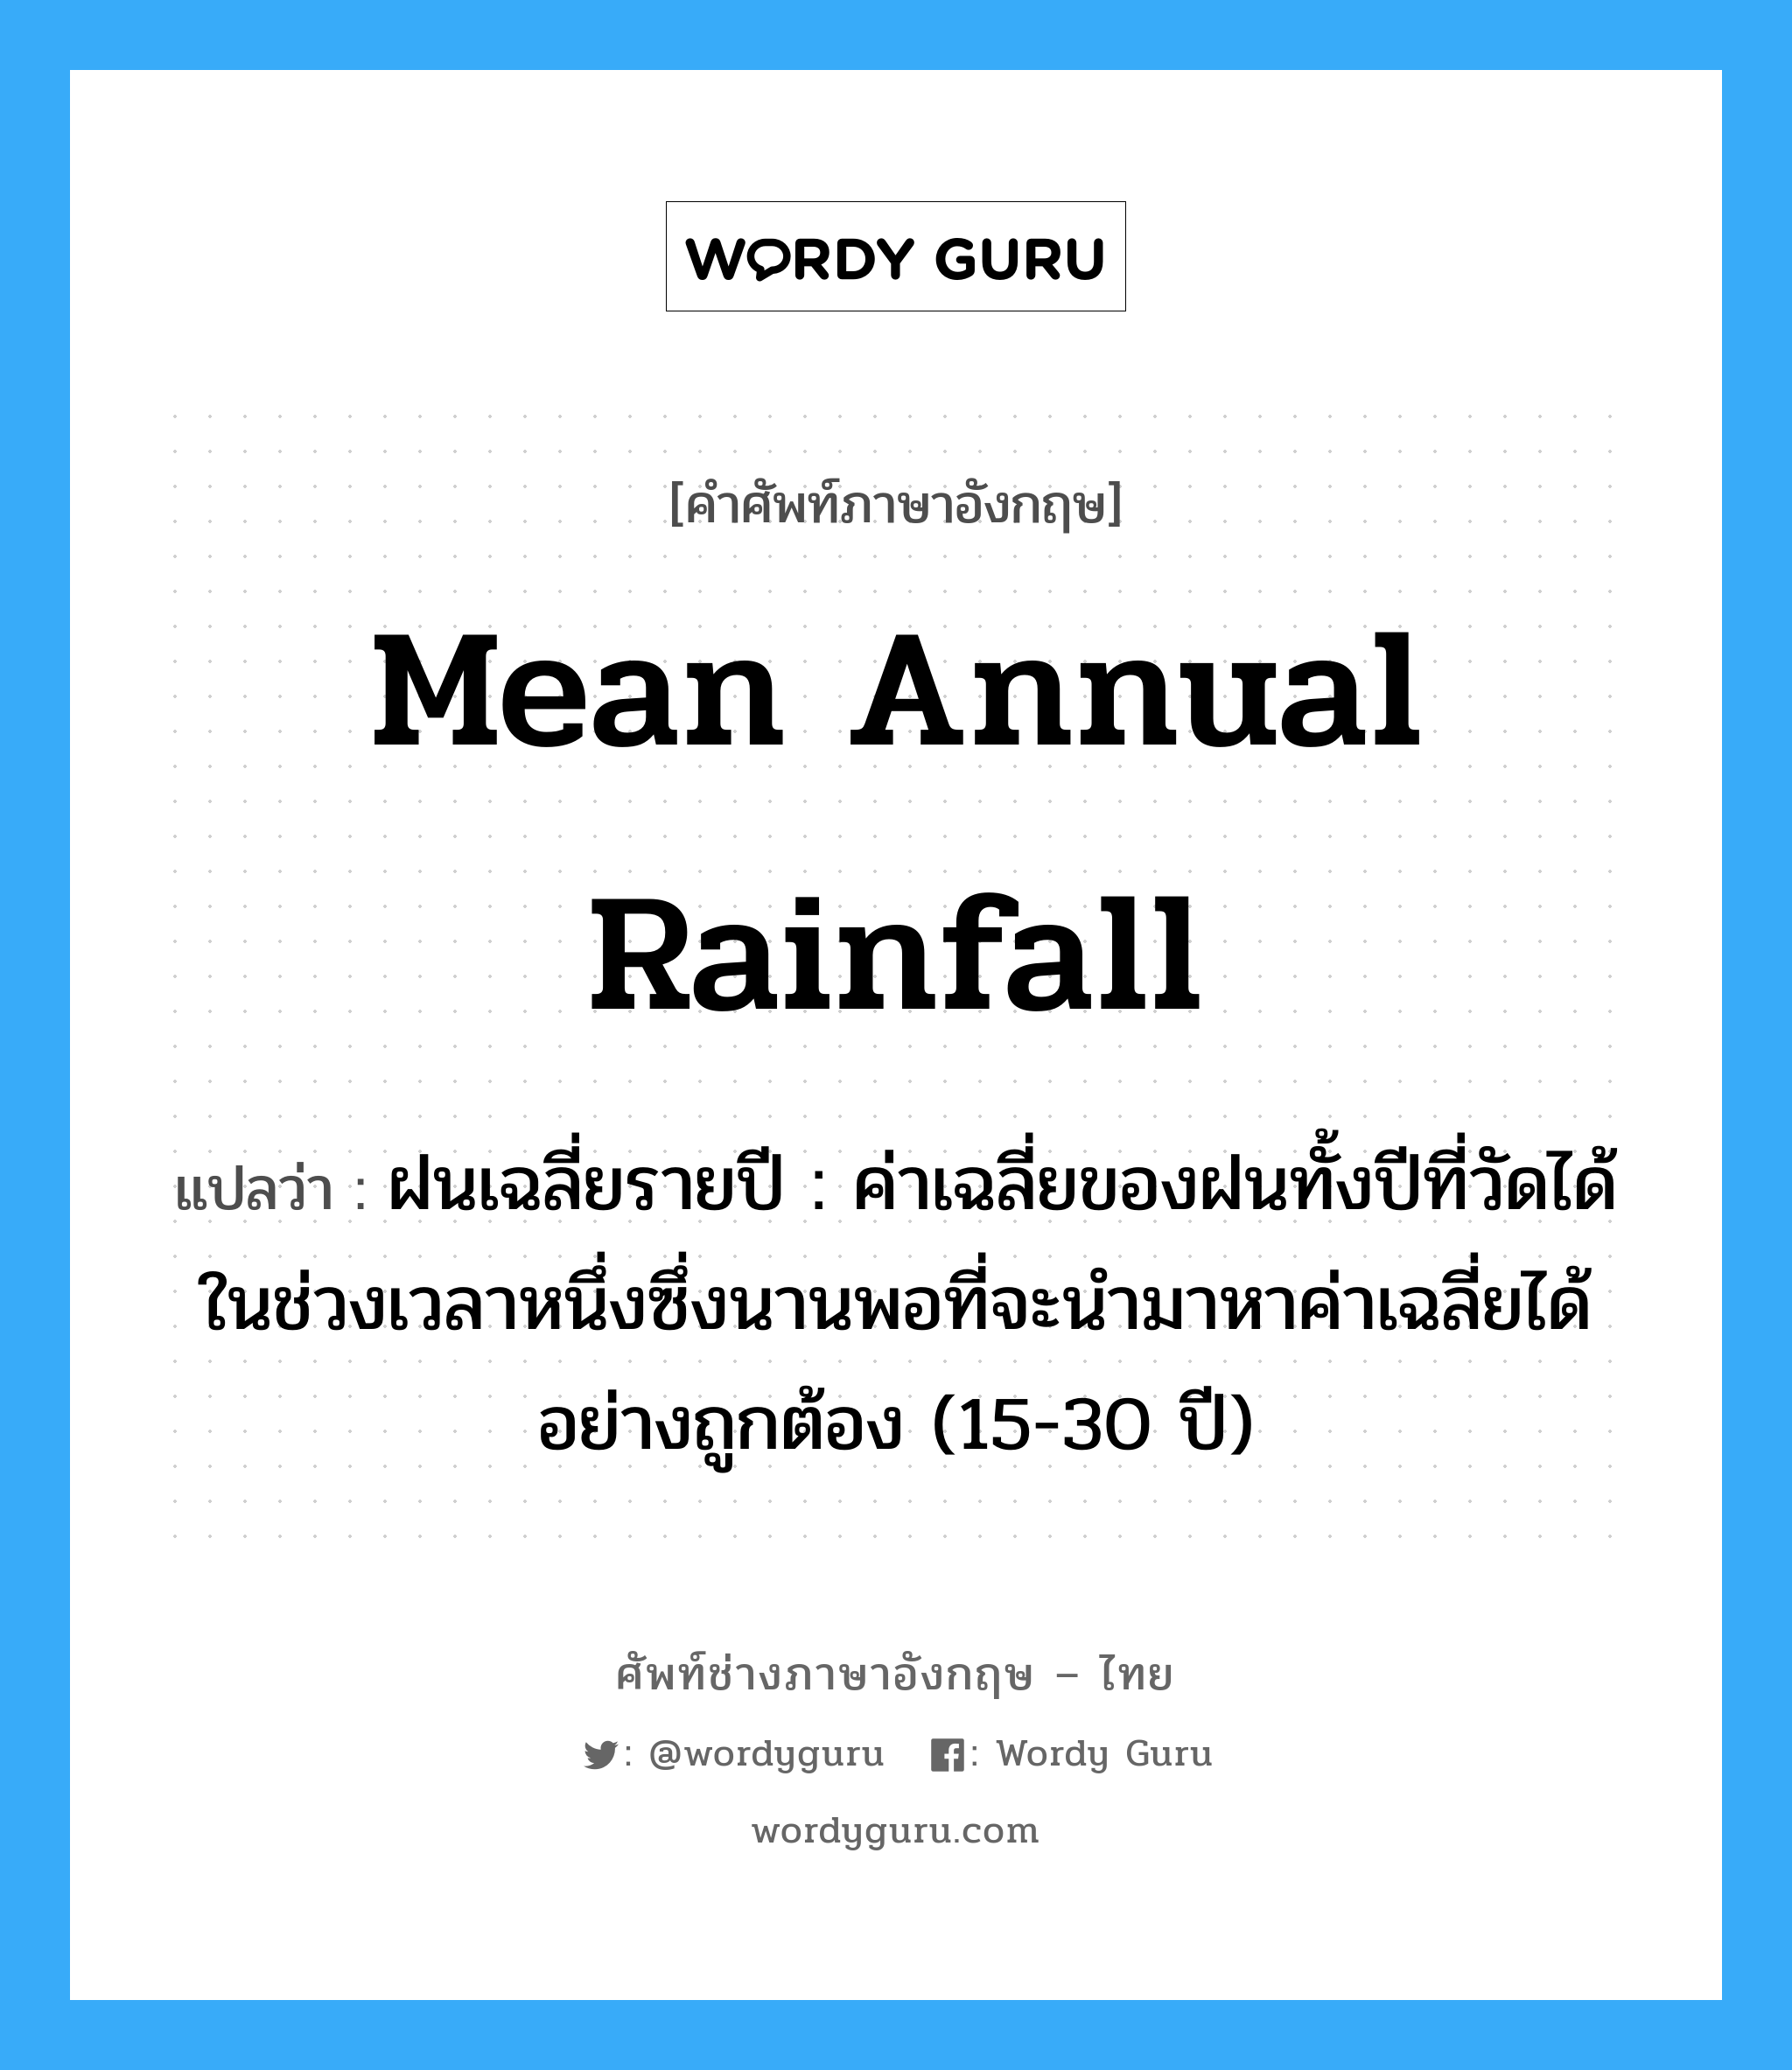 mean annual rainfall แปลว่า?, คำศัพท์ช่างภาษาอังกฤษ - ไทย mean annual rainfall คำศัพท์ภาษาอังกฤษ mean annual rainfall แปลว่า ฝนเฉลี่ยรายปี : ค่าเฉลี่ยของฝนทั้งปีที่วัดได้ในช่วงเวลาหนึ่งซึ่งนานพอที่จะนำมาหาค่าเฉลี่ยได้อย่างถูกต้อง (15-30 ปี)